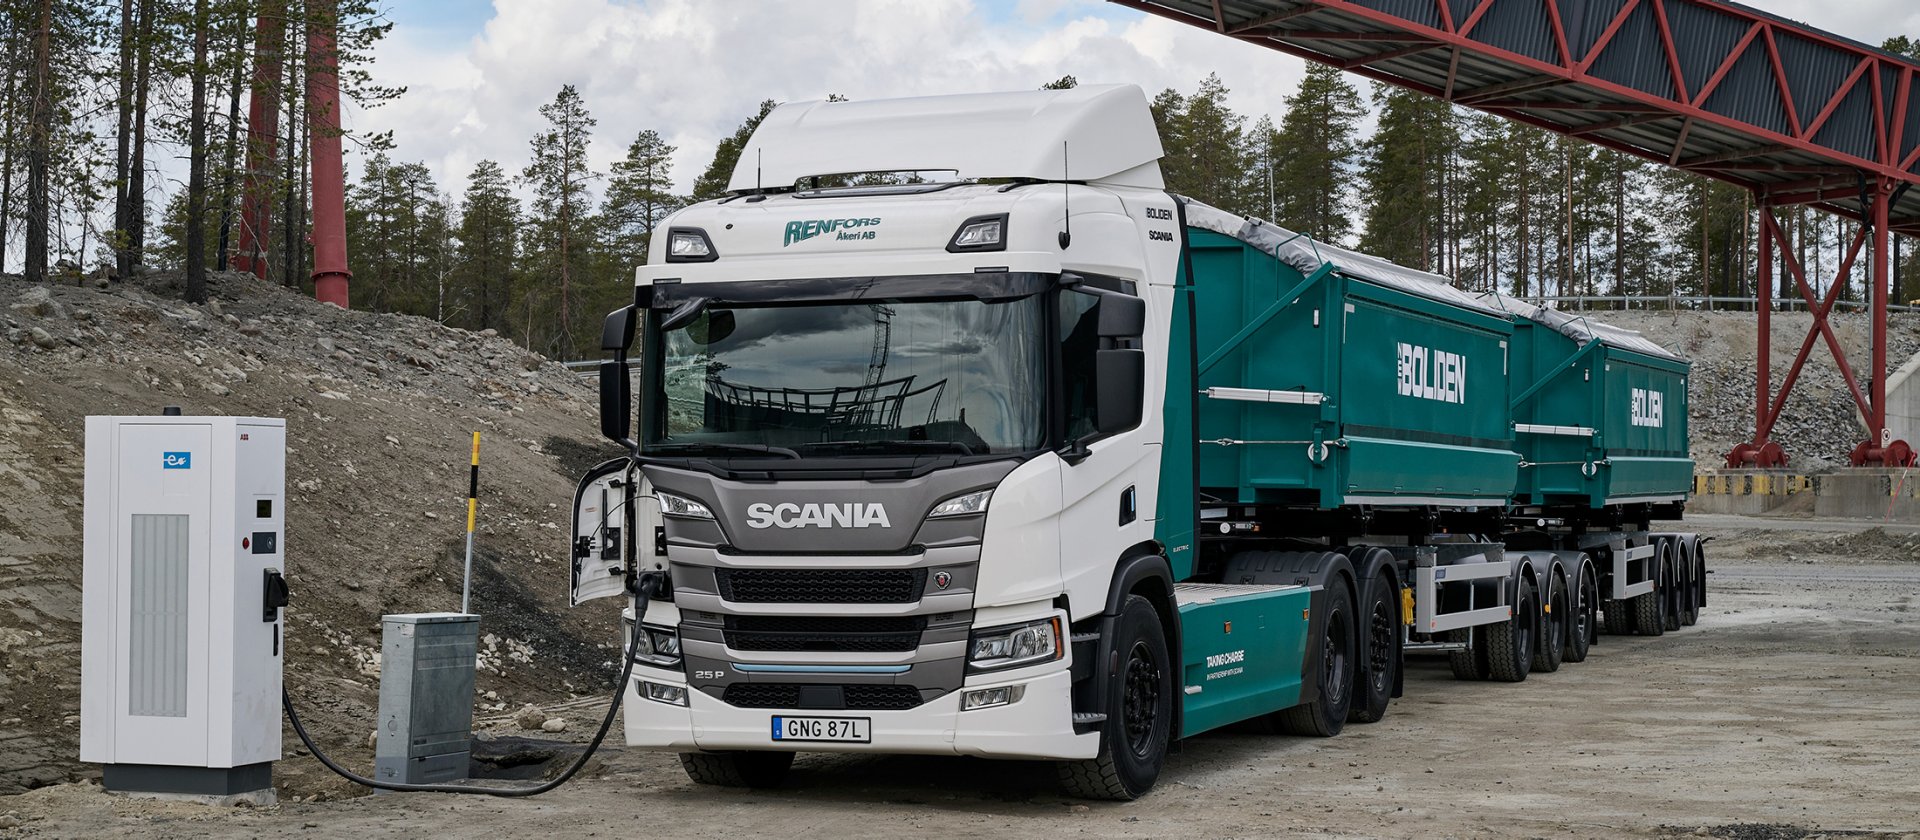 Este camión eléctrico Scania de 74 toneladas funciona 19 horas al día en la mina